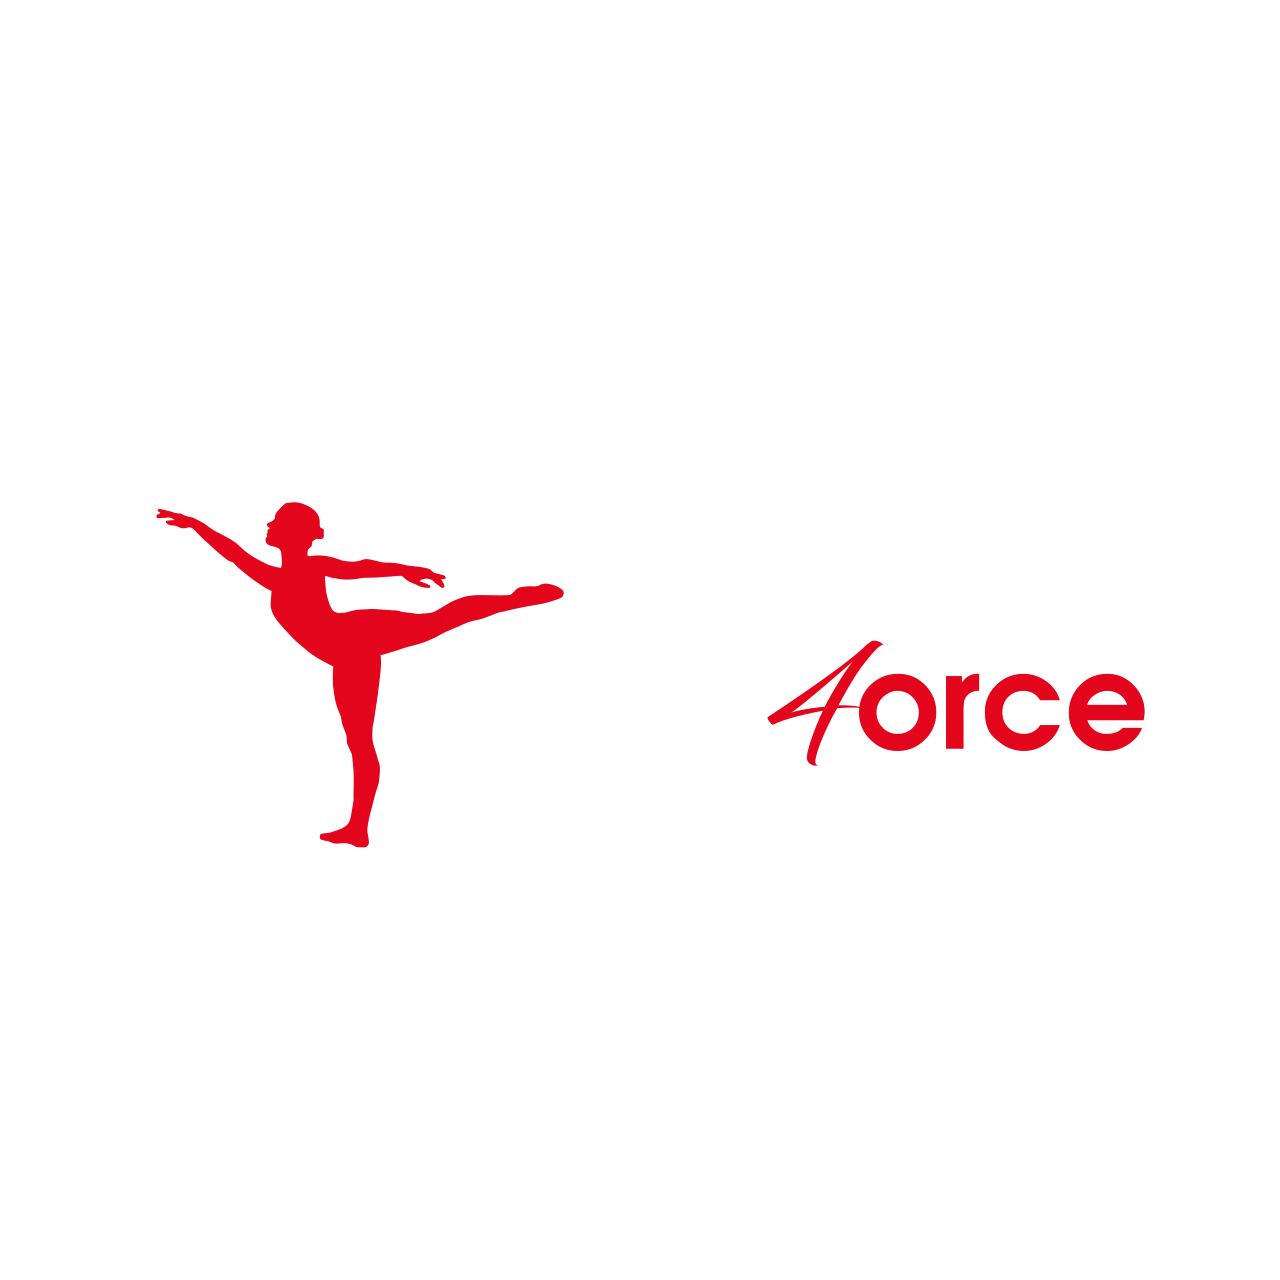 Floor 4orce Dance Academy